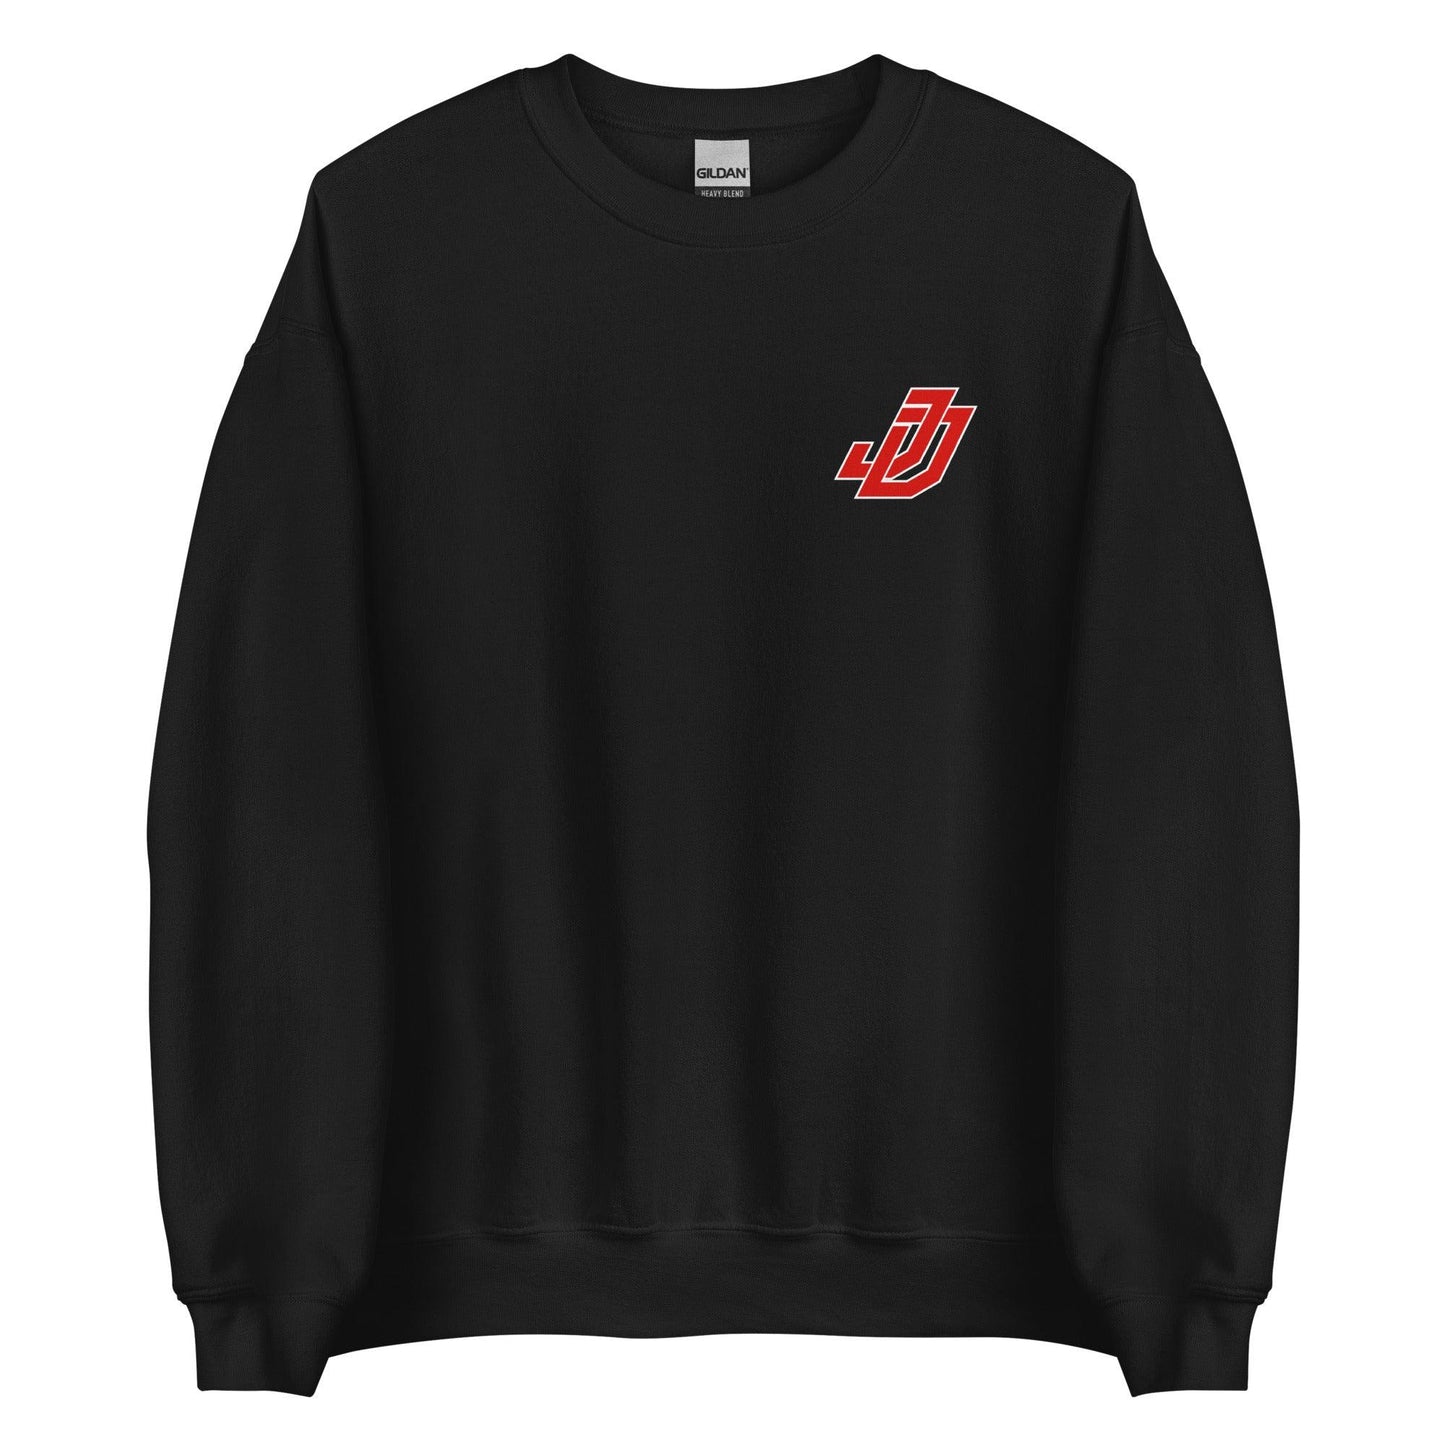 Johnnie Dixon "Essential" Sweatshirt - Fan Arch